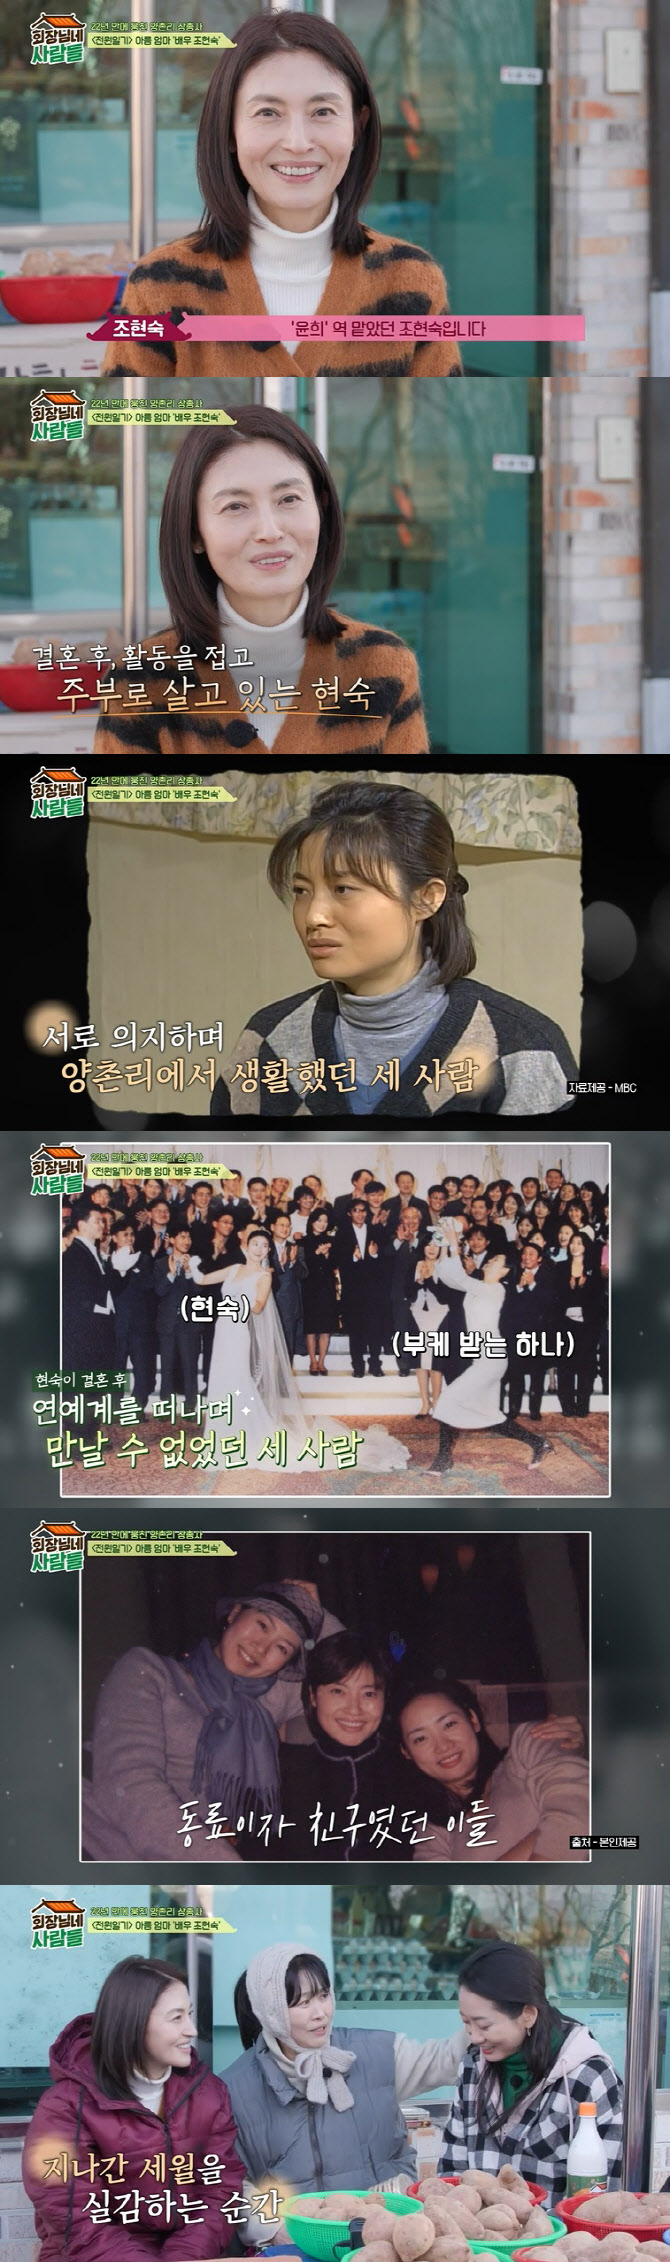 Jo Hyun-sook, statut actuel de la mère d’Arum dans ‘Country Diary’ : “Cela fait 20 ans que je ne suis pas apparue dans une émission de télévision… J’ai passé mon temps comme femme au foyer”